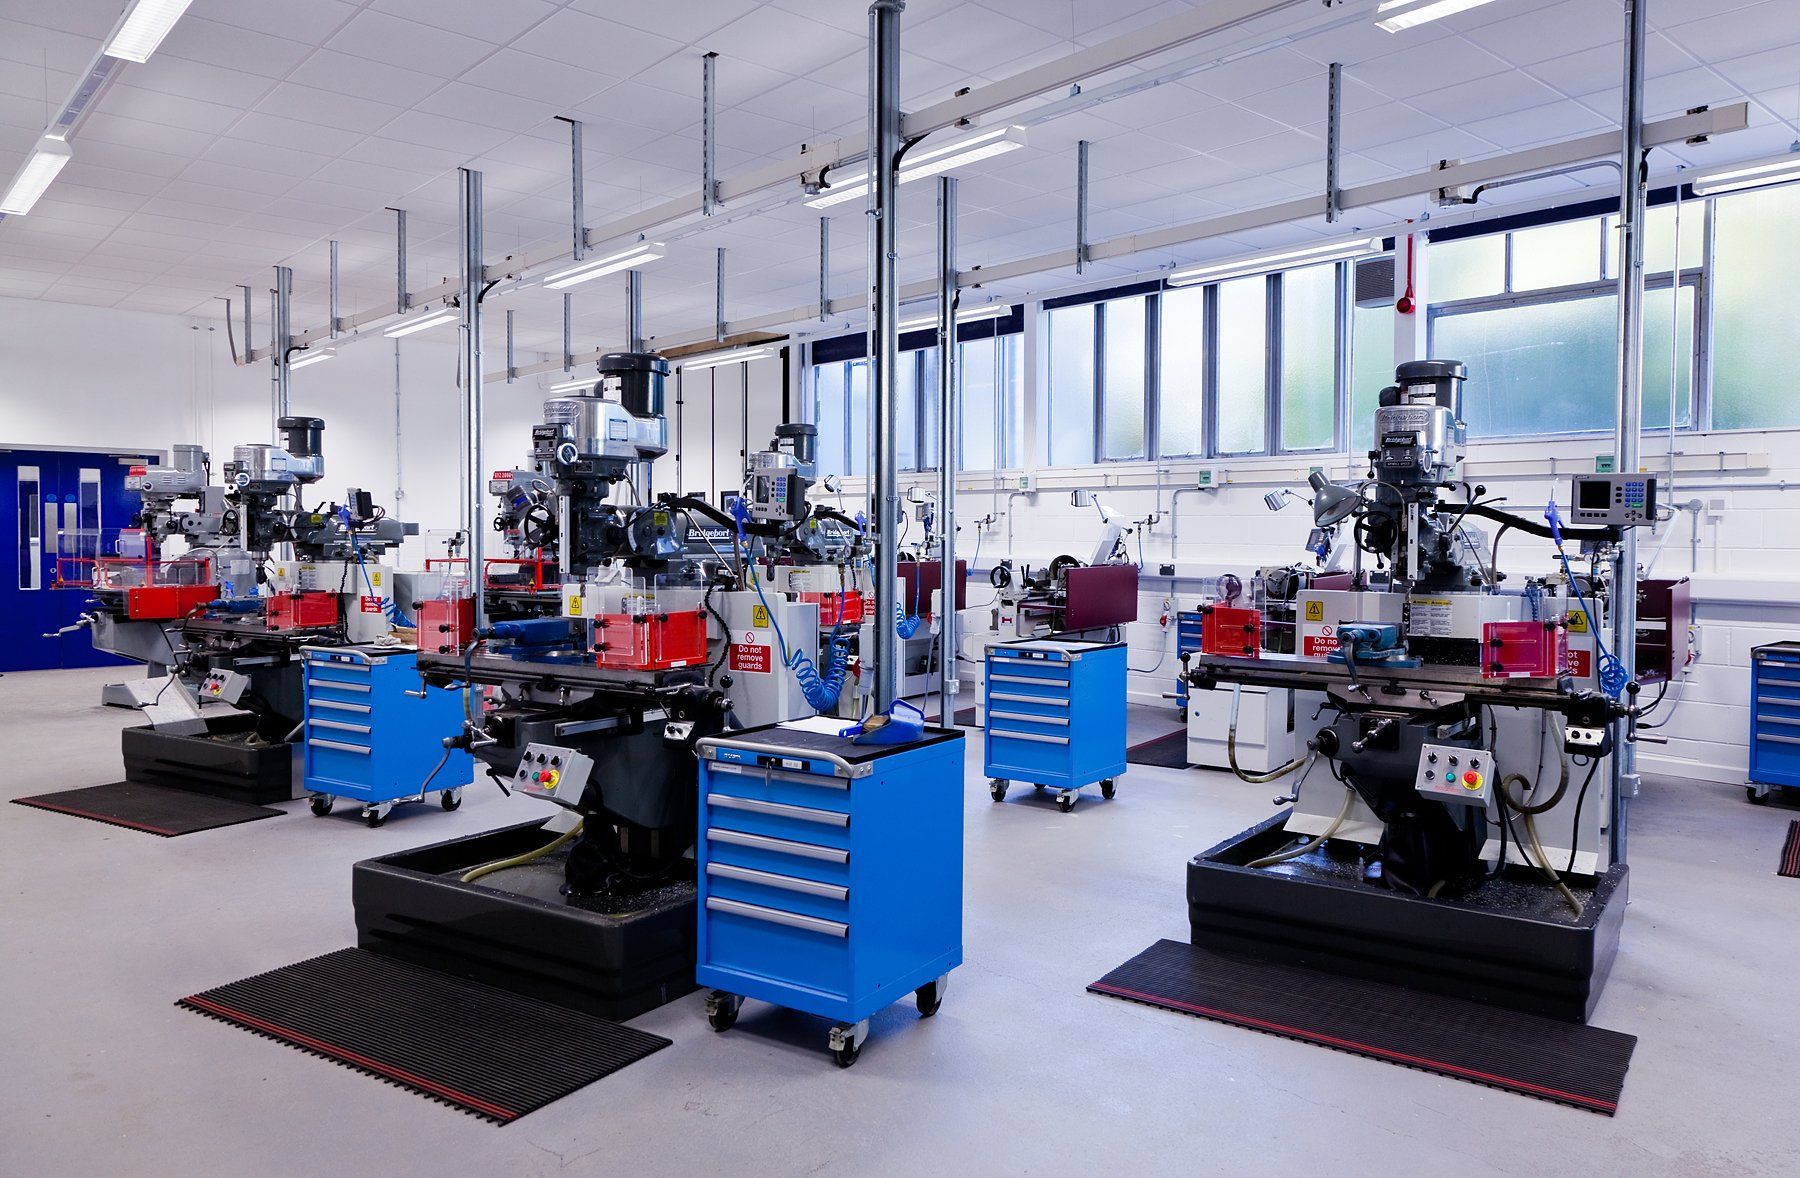 University of Bath mechanical engineering laboratory Refurbishment of Mechanical Engineering Laboratories